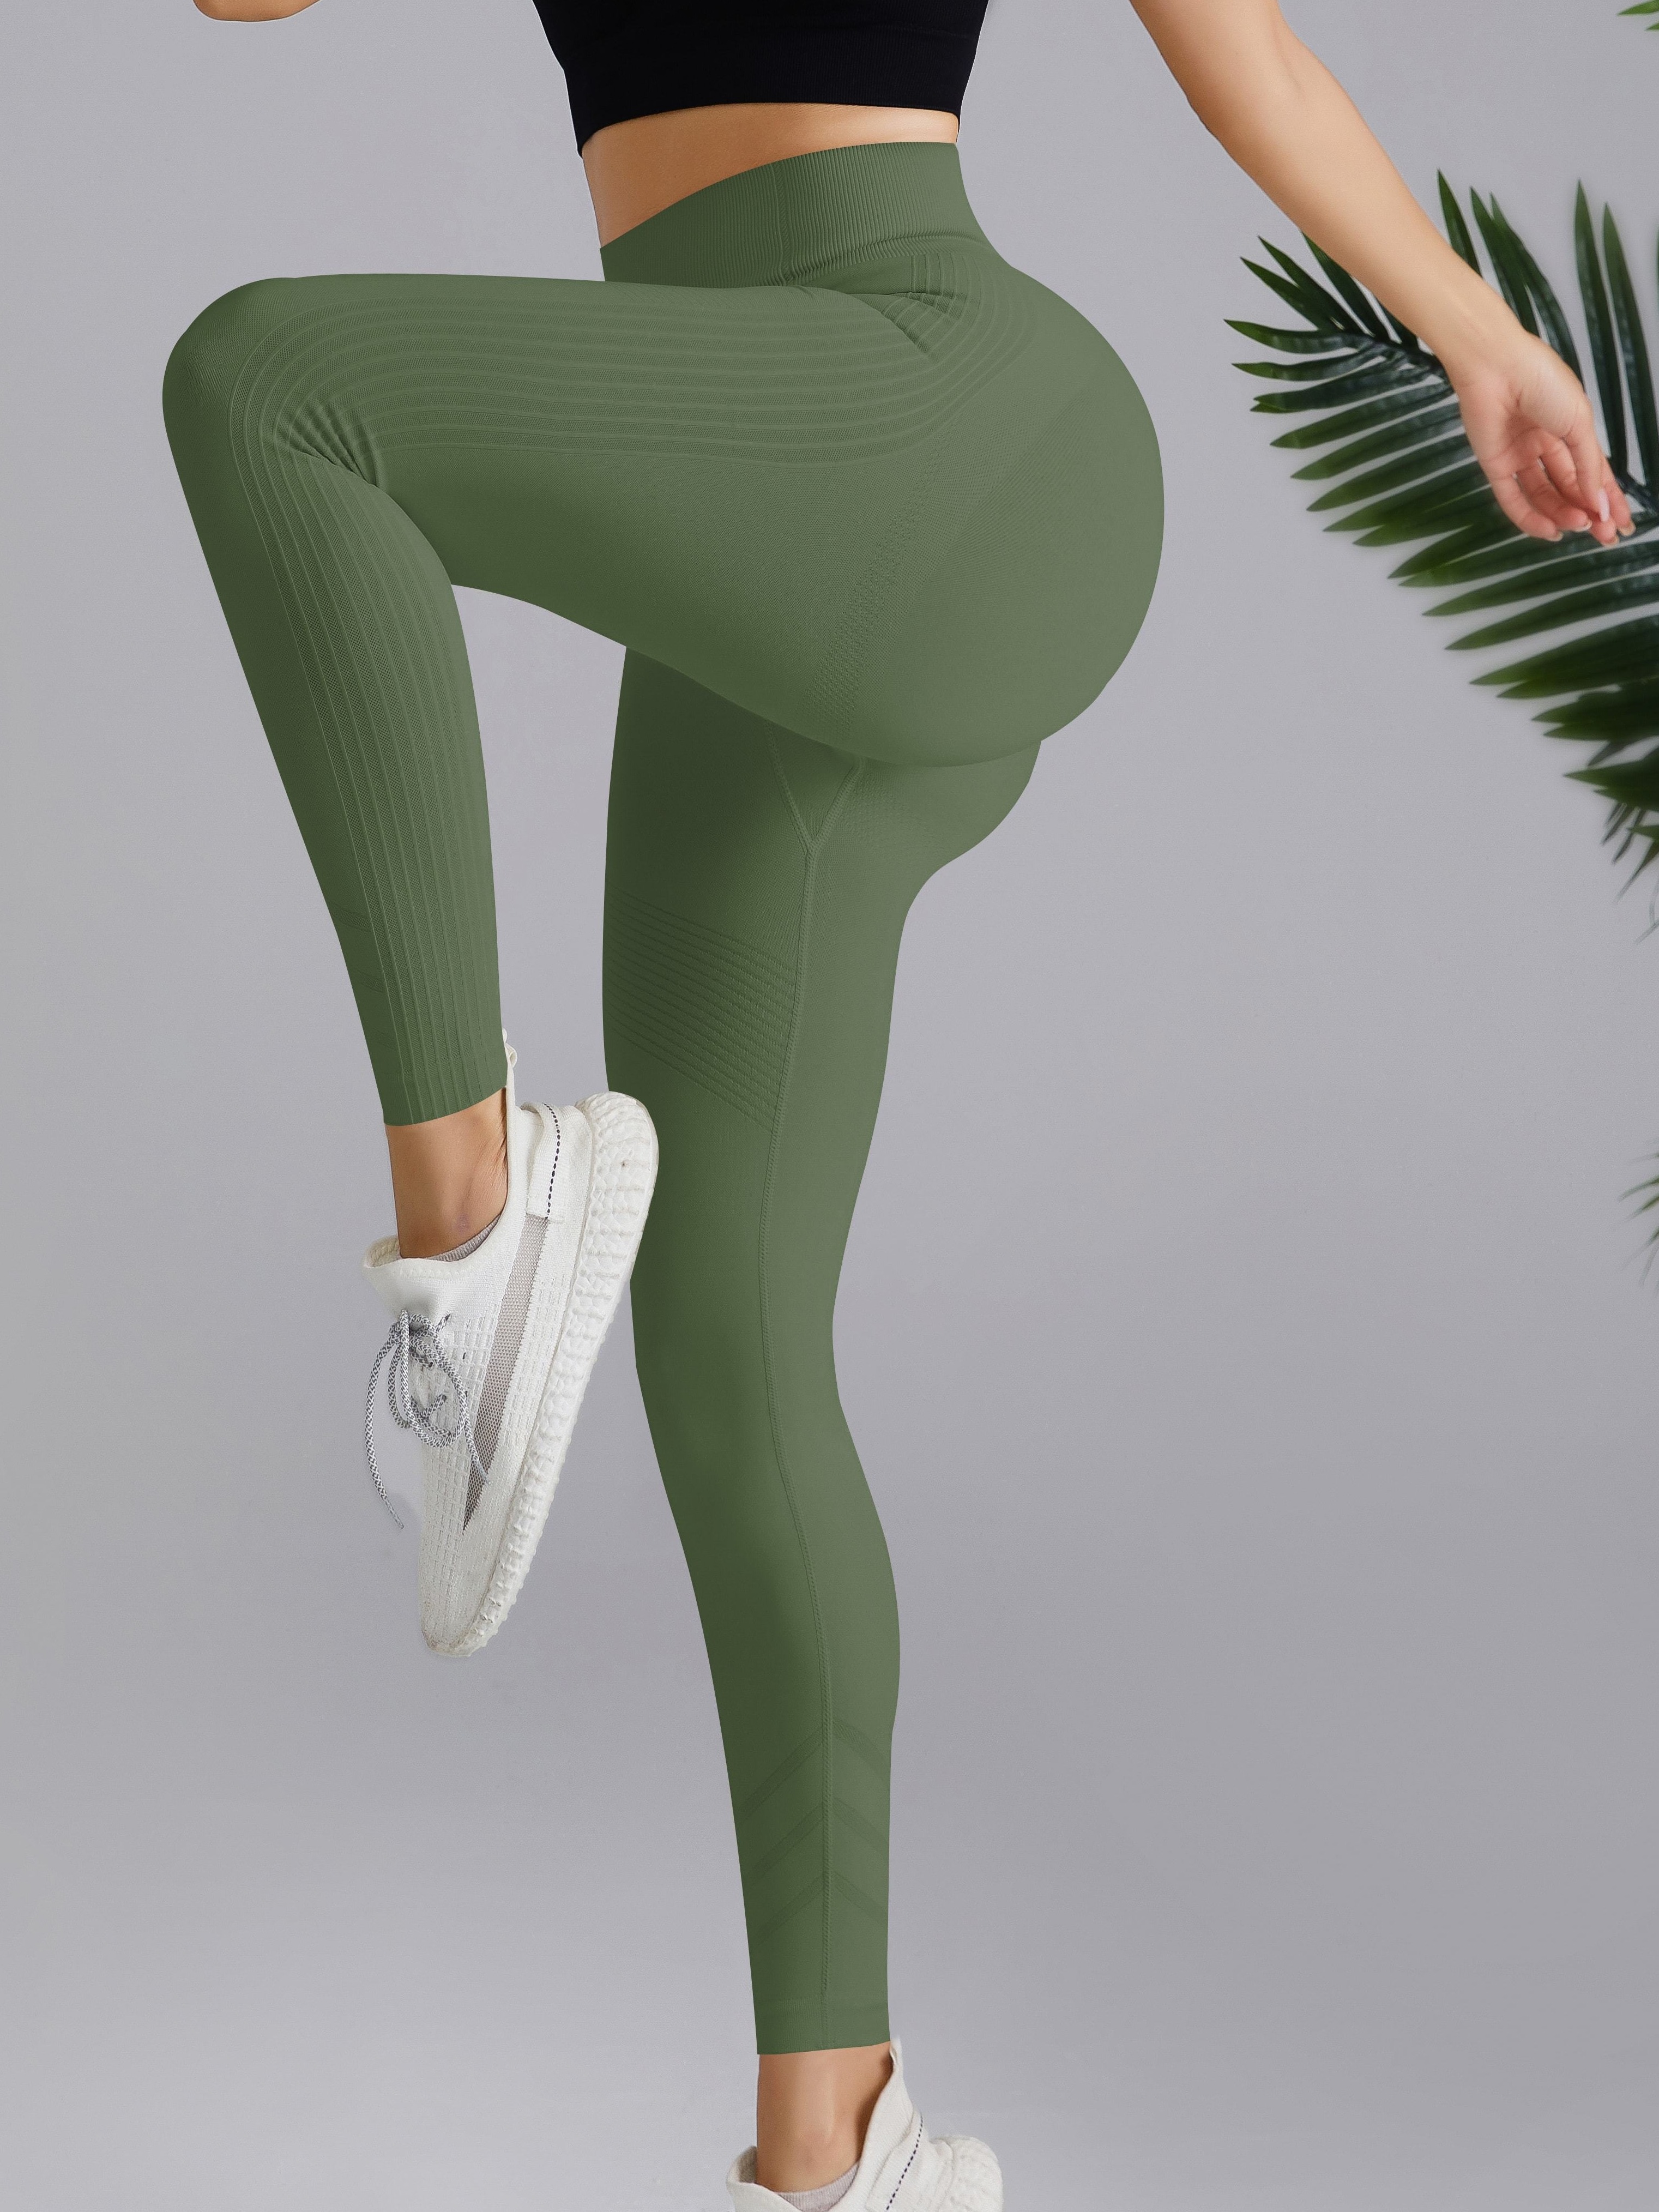 Pantalones De Yoga De Color Sólido, Leggings Deportivos Para